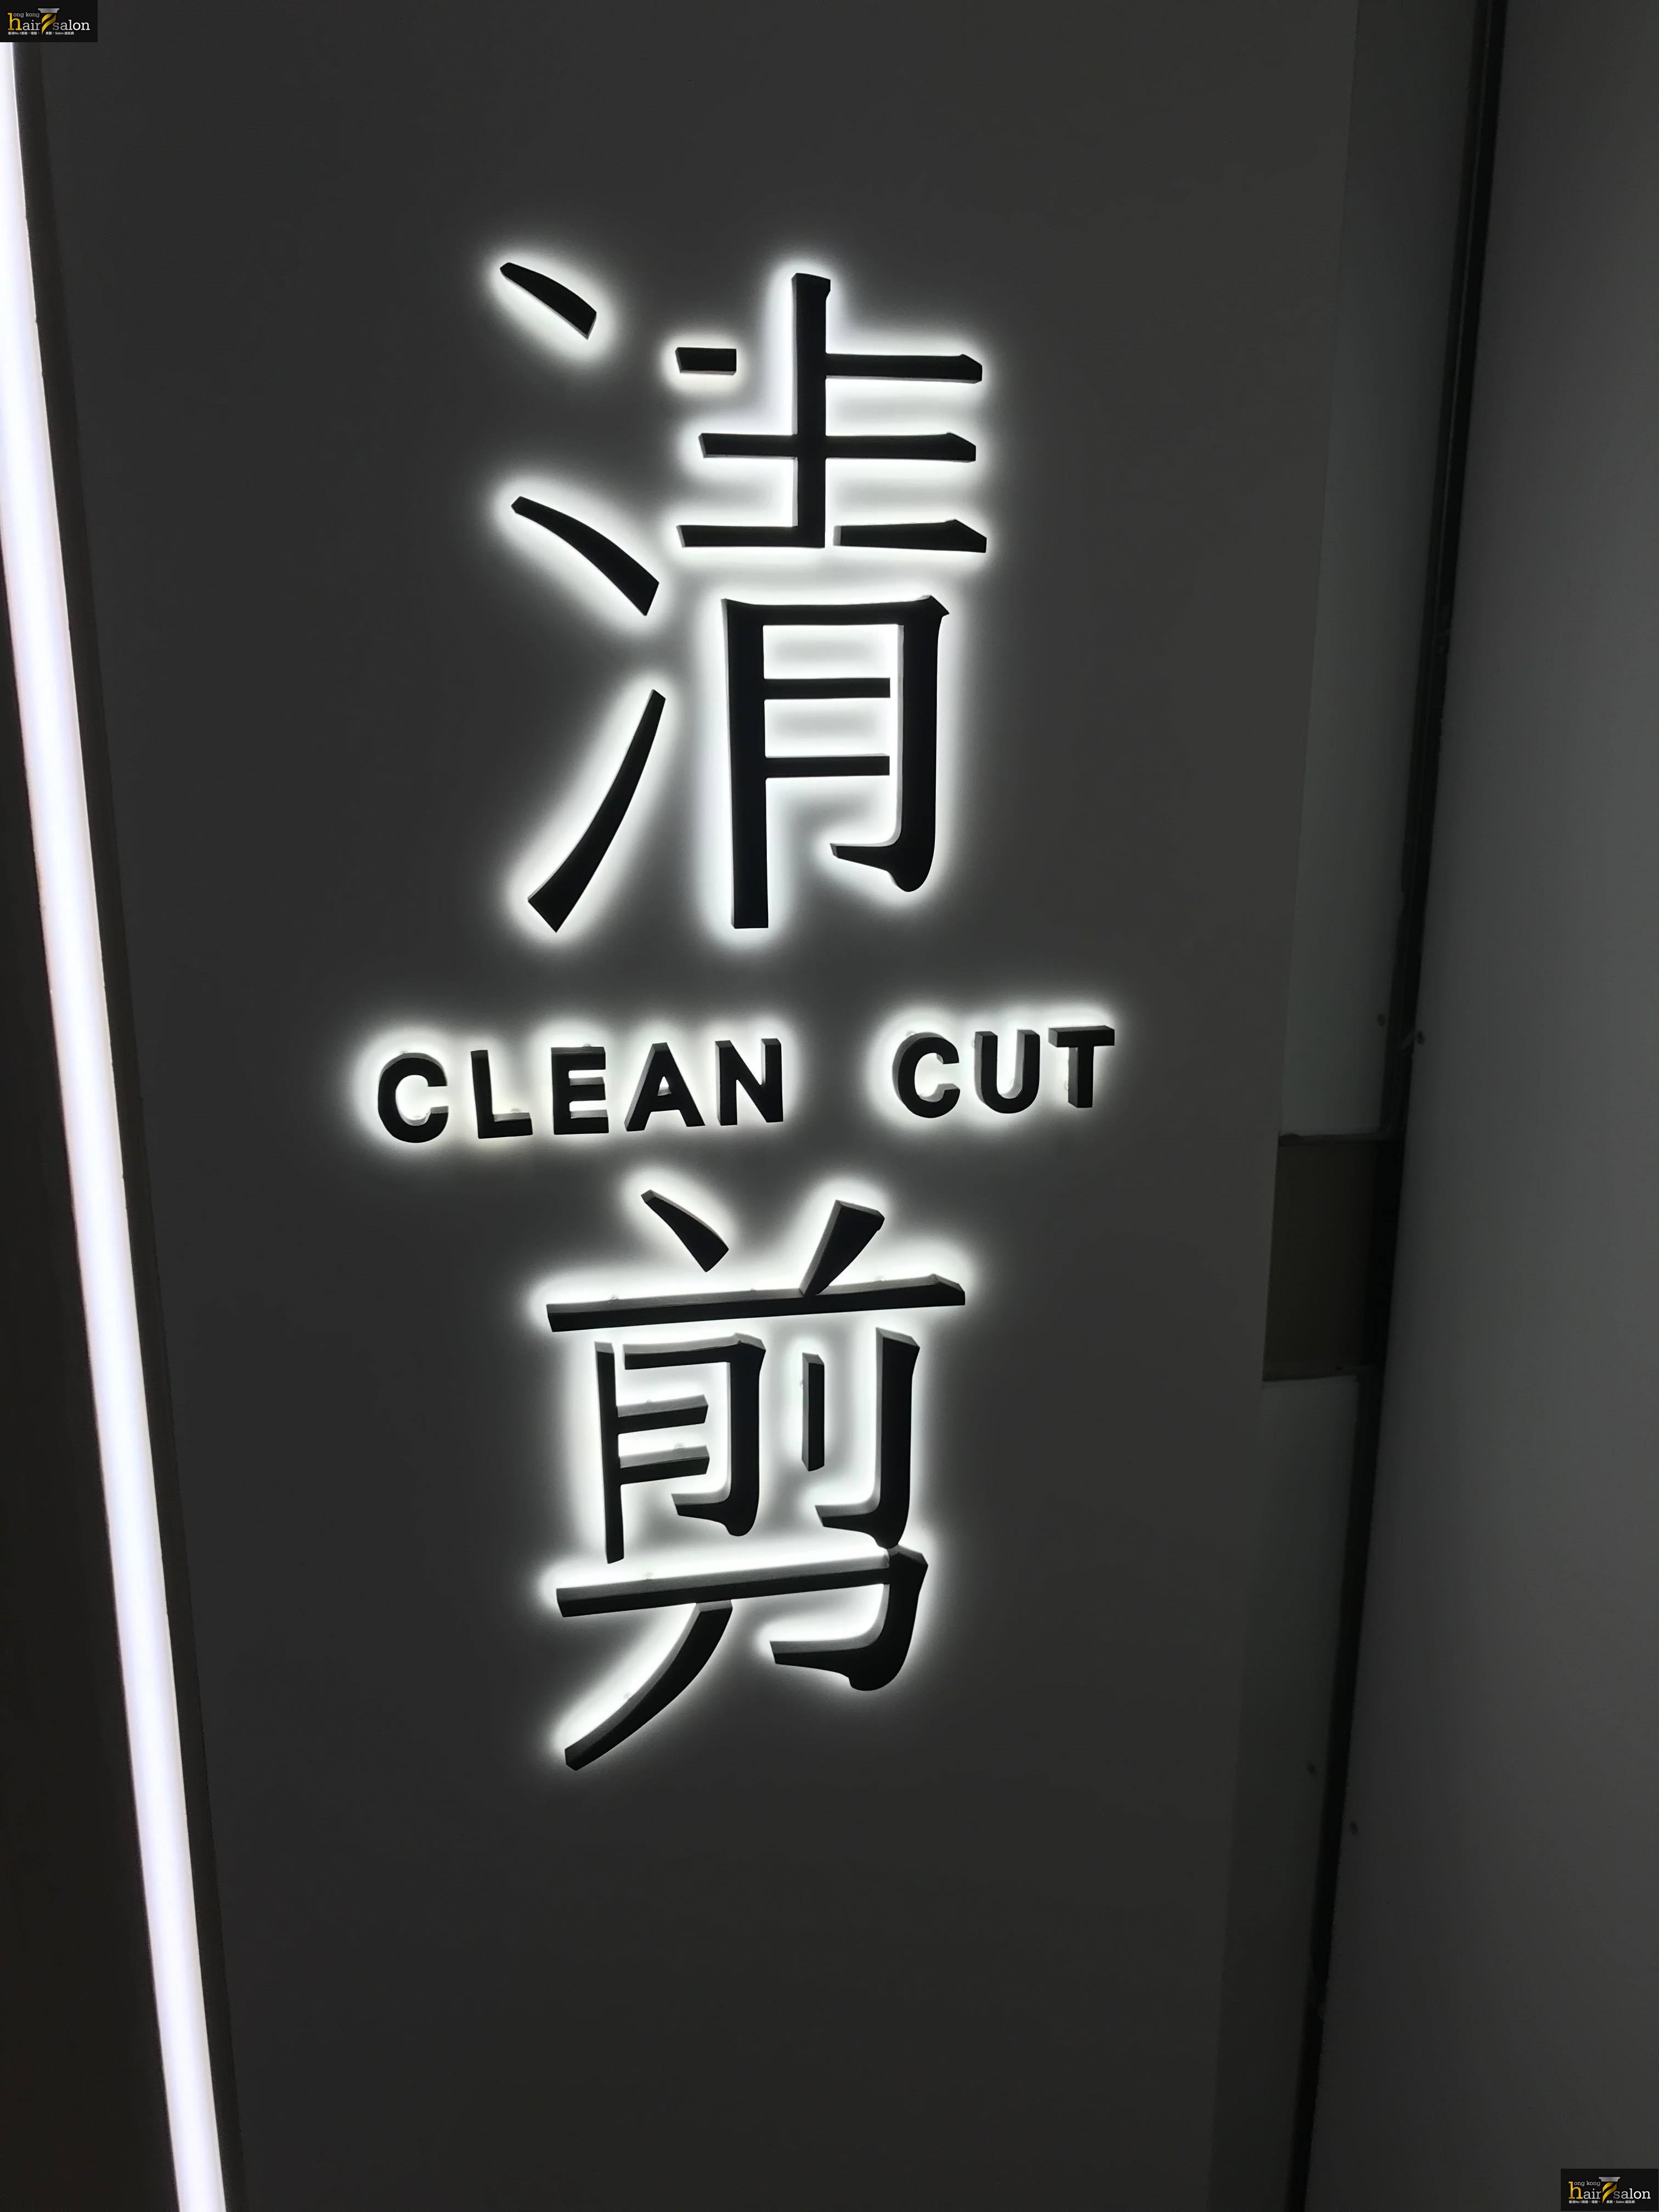 髮型屋: 清剪 CLEAN CUT (屯門市廣場)